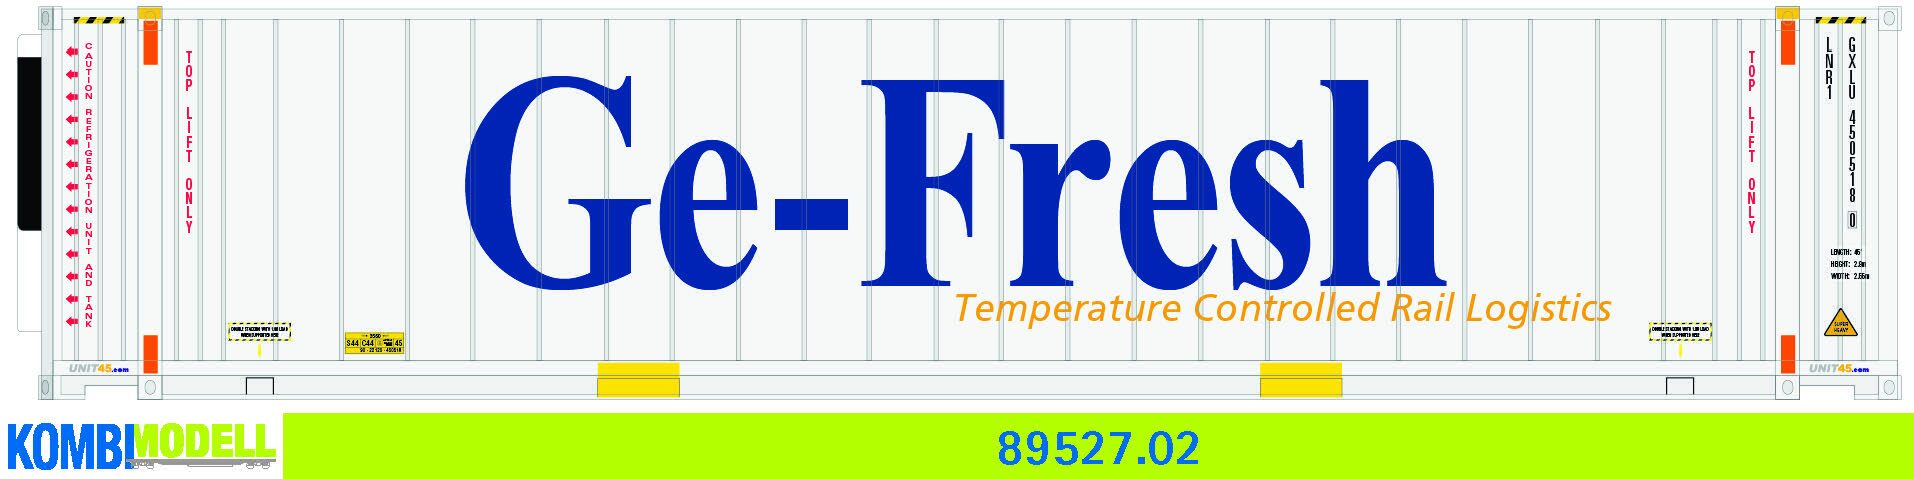 Kombimodell 89527.02 WB-A /Ct 45' (Euro) Reefer (DE) Ge-Fresh"" #GXLU 450018